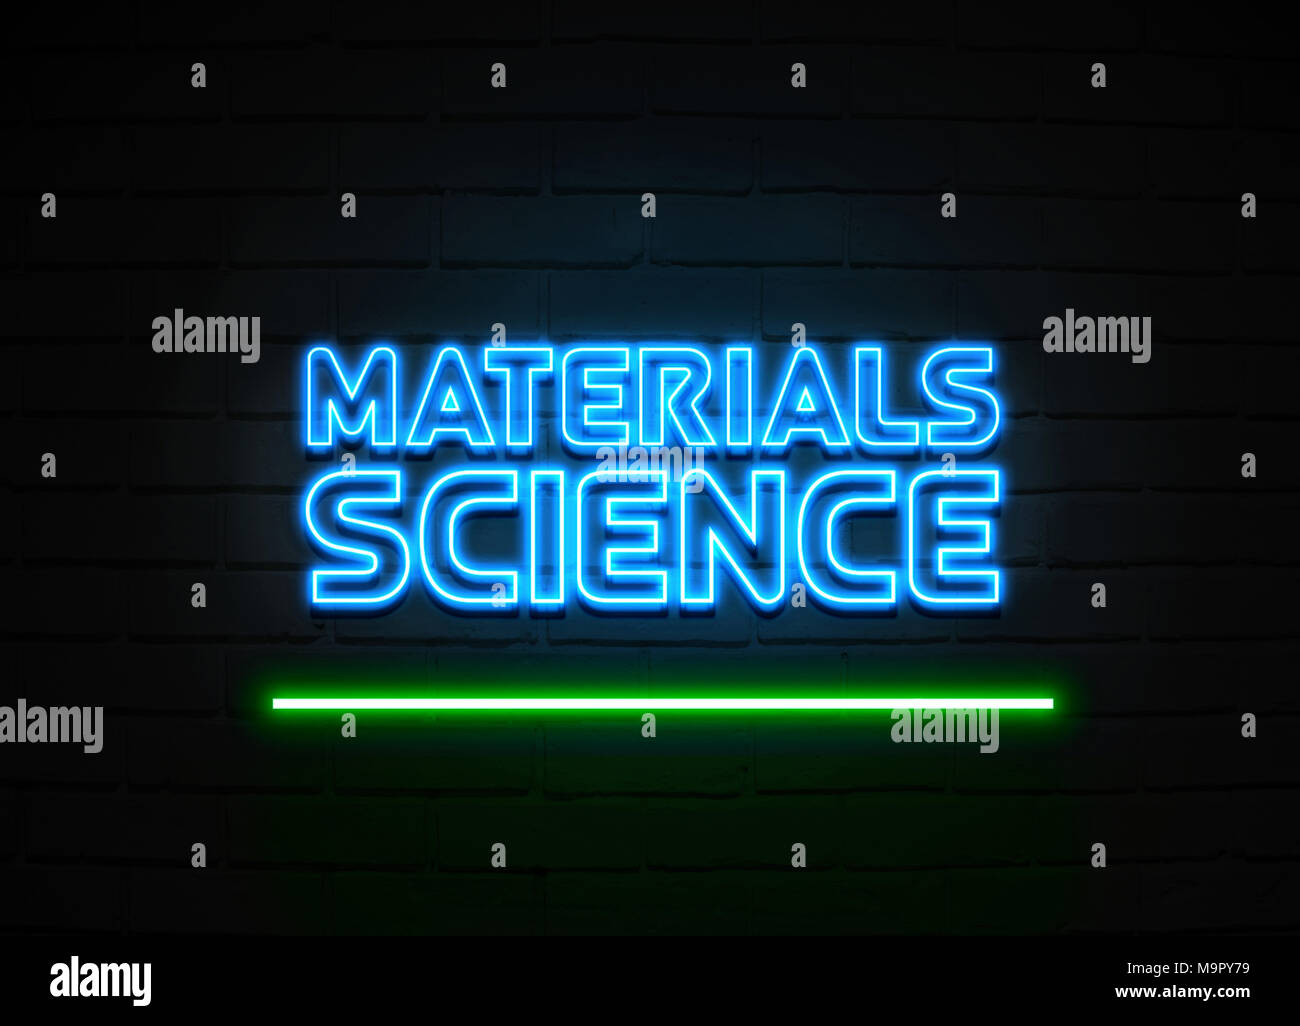 Materialien Wissenschaft Leuchtreklame - glühende Leuchtreklame auf brickwall Wand - 3D-Royalty Free Stock Illustration dargestellt. Stockfoto